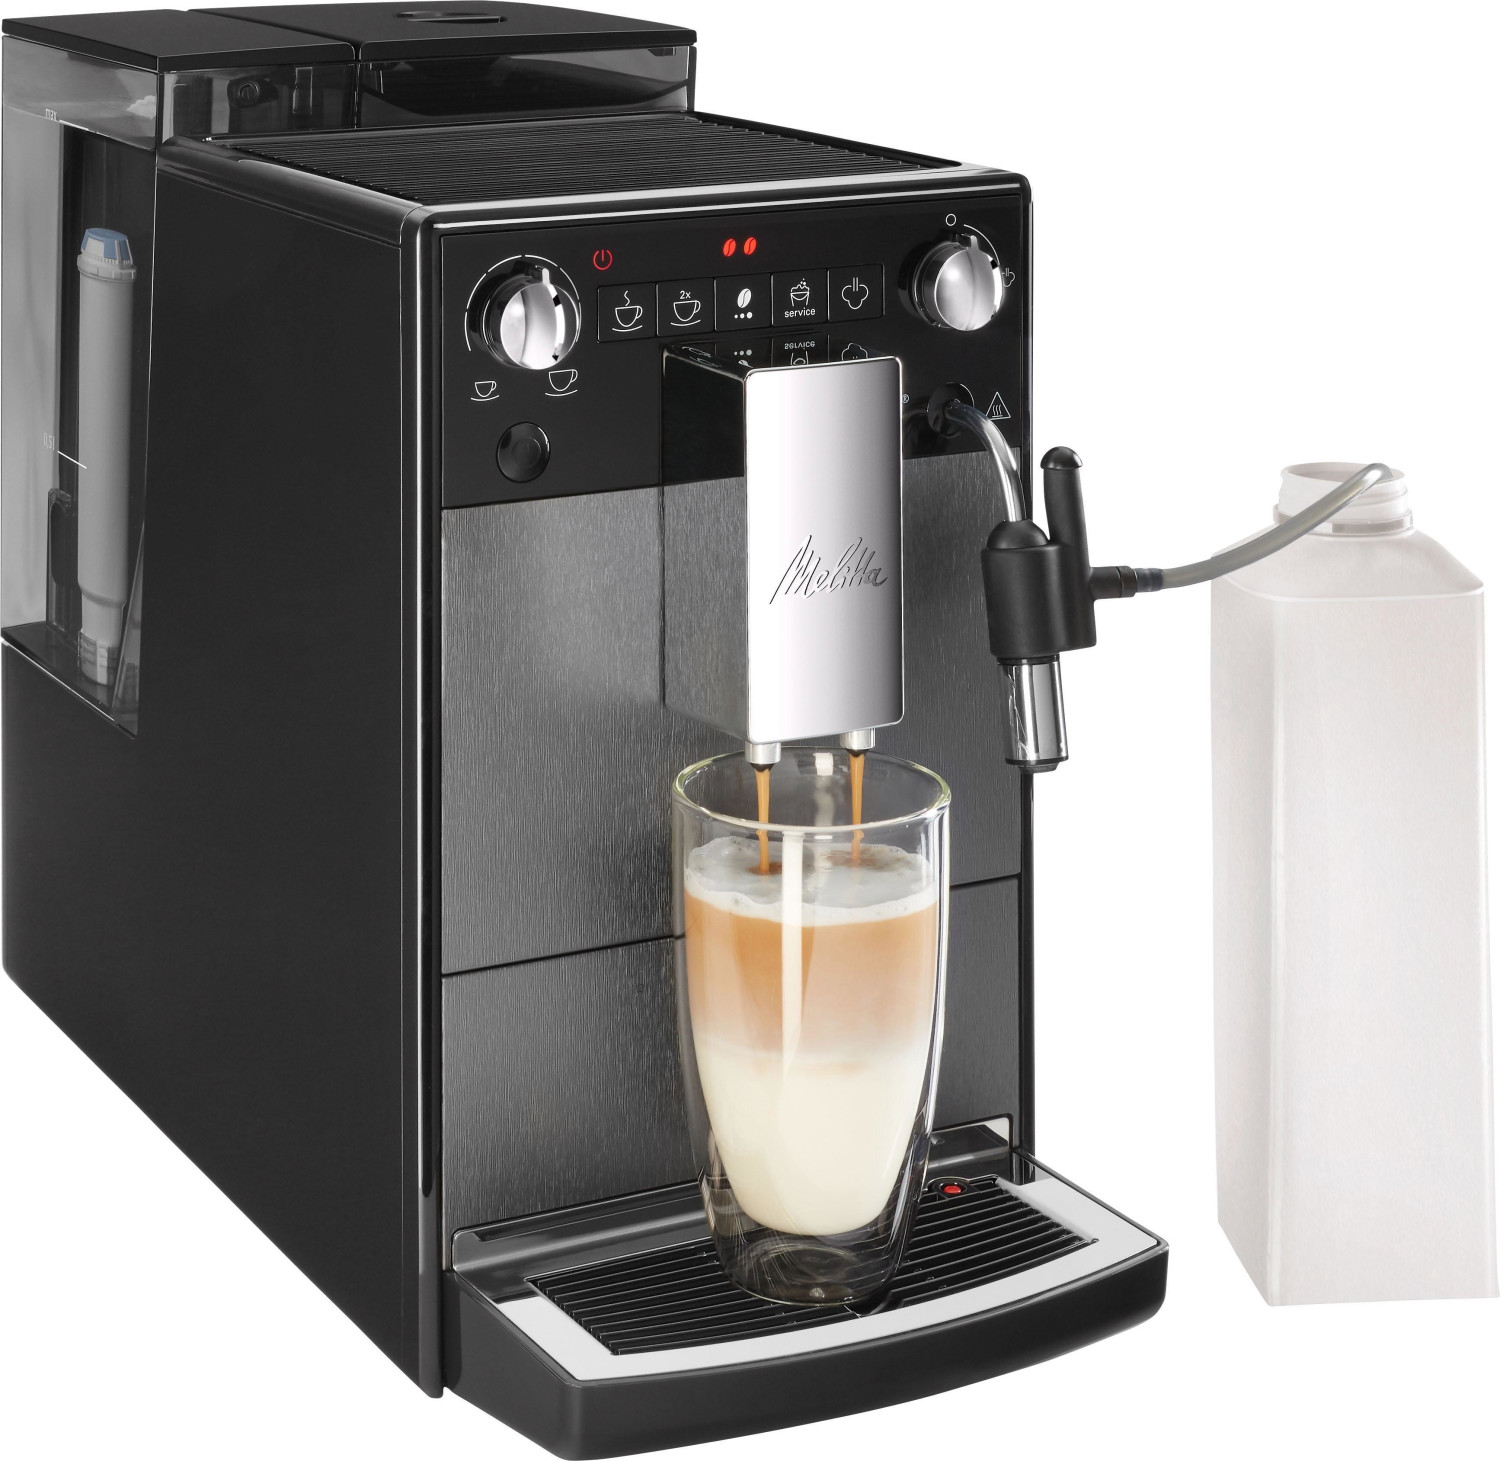 MELITTA AVANZA F270-100, Machine à café grain